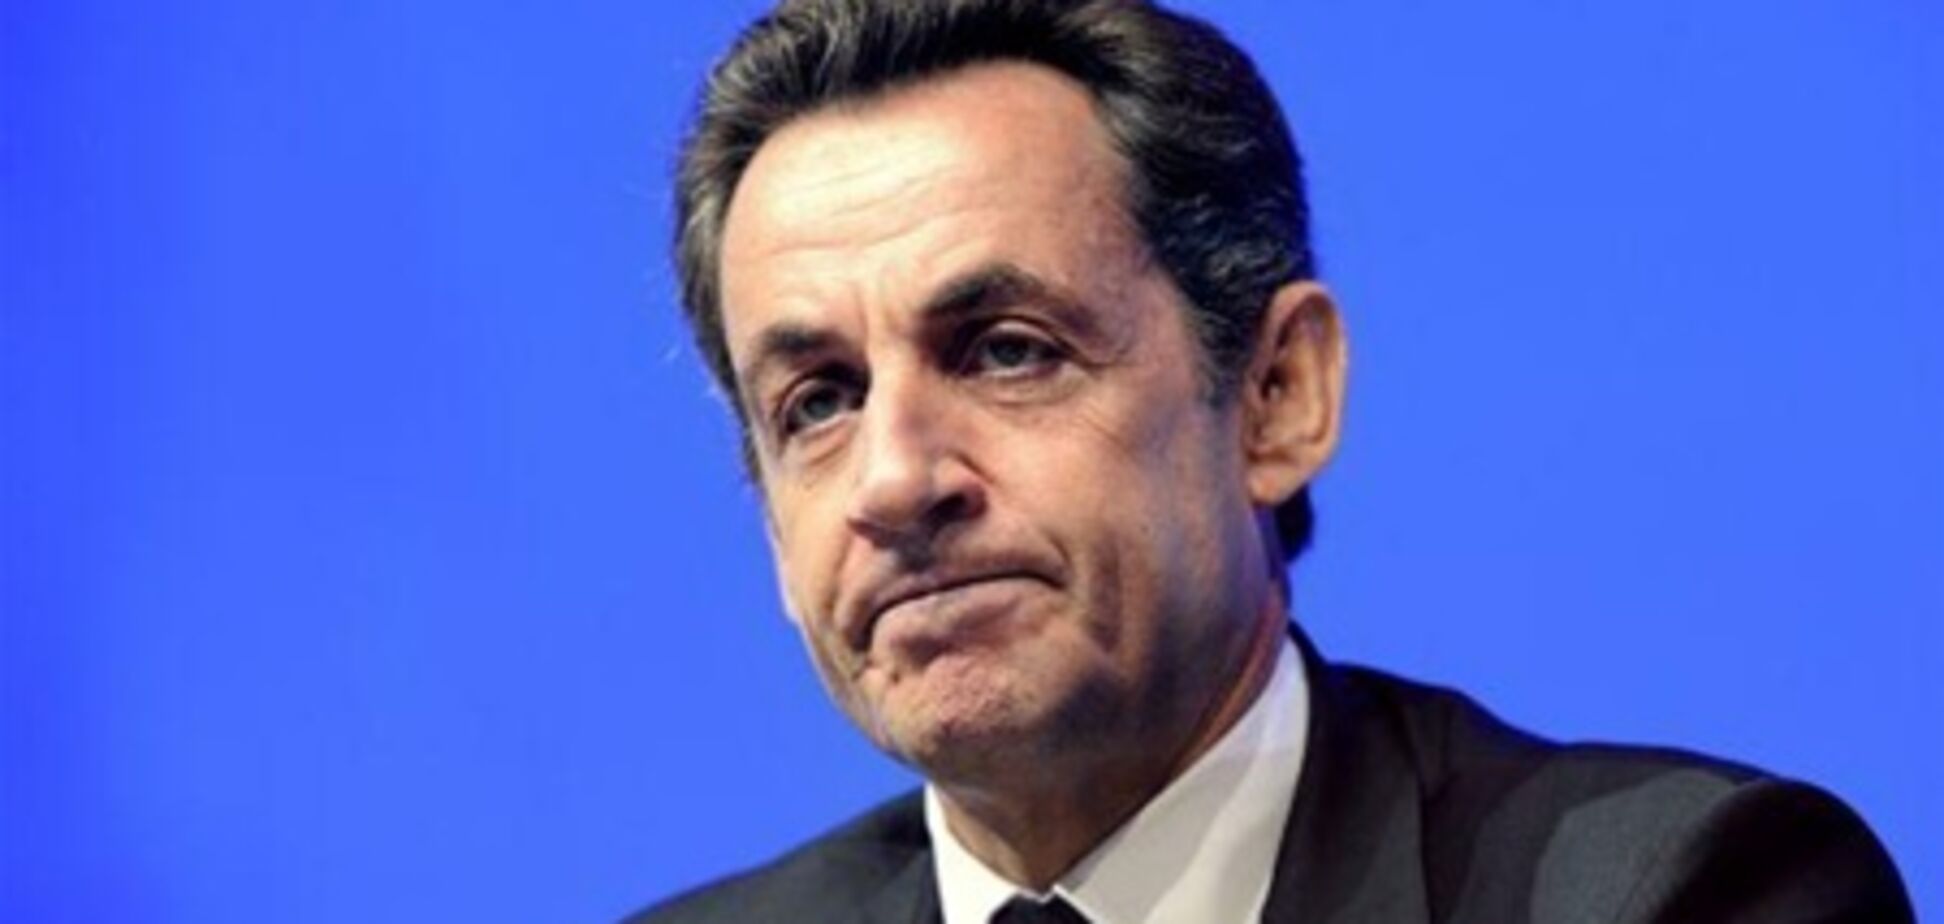 Следователи провели обыск в доме и офисе Саркози